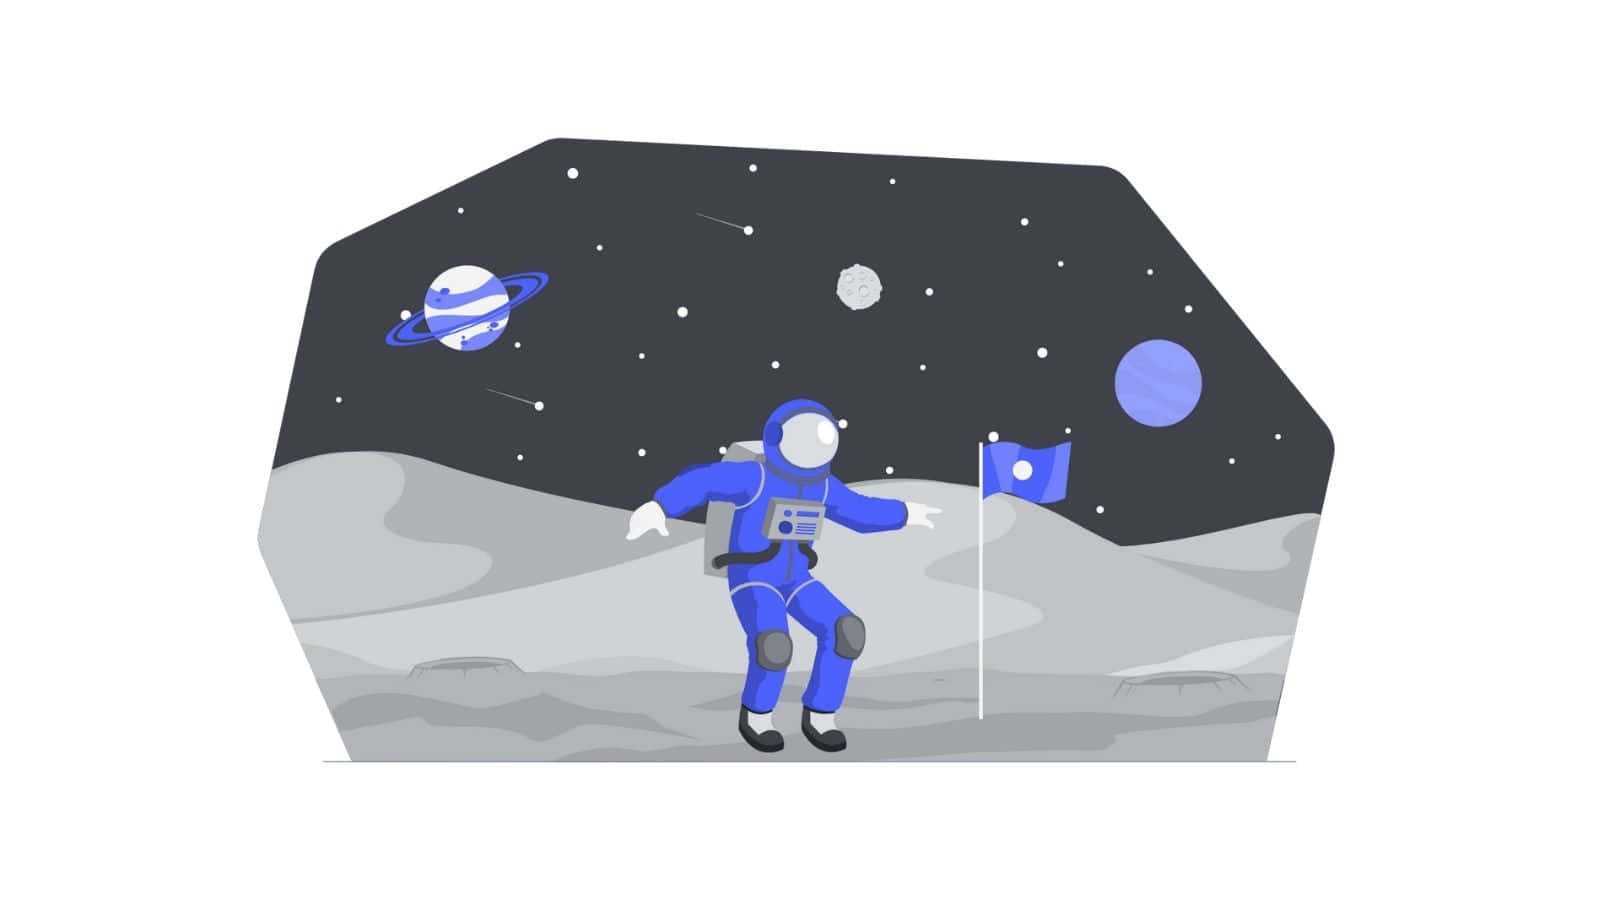 Astronauttiktok Profilbild-ideen Wallpaper